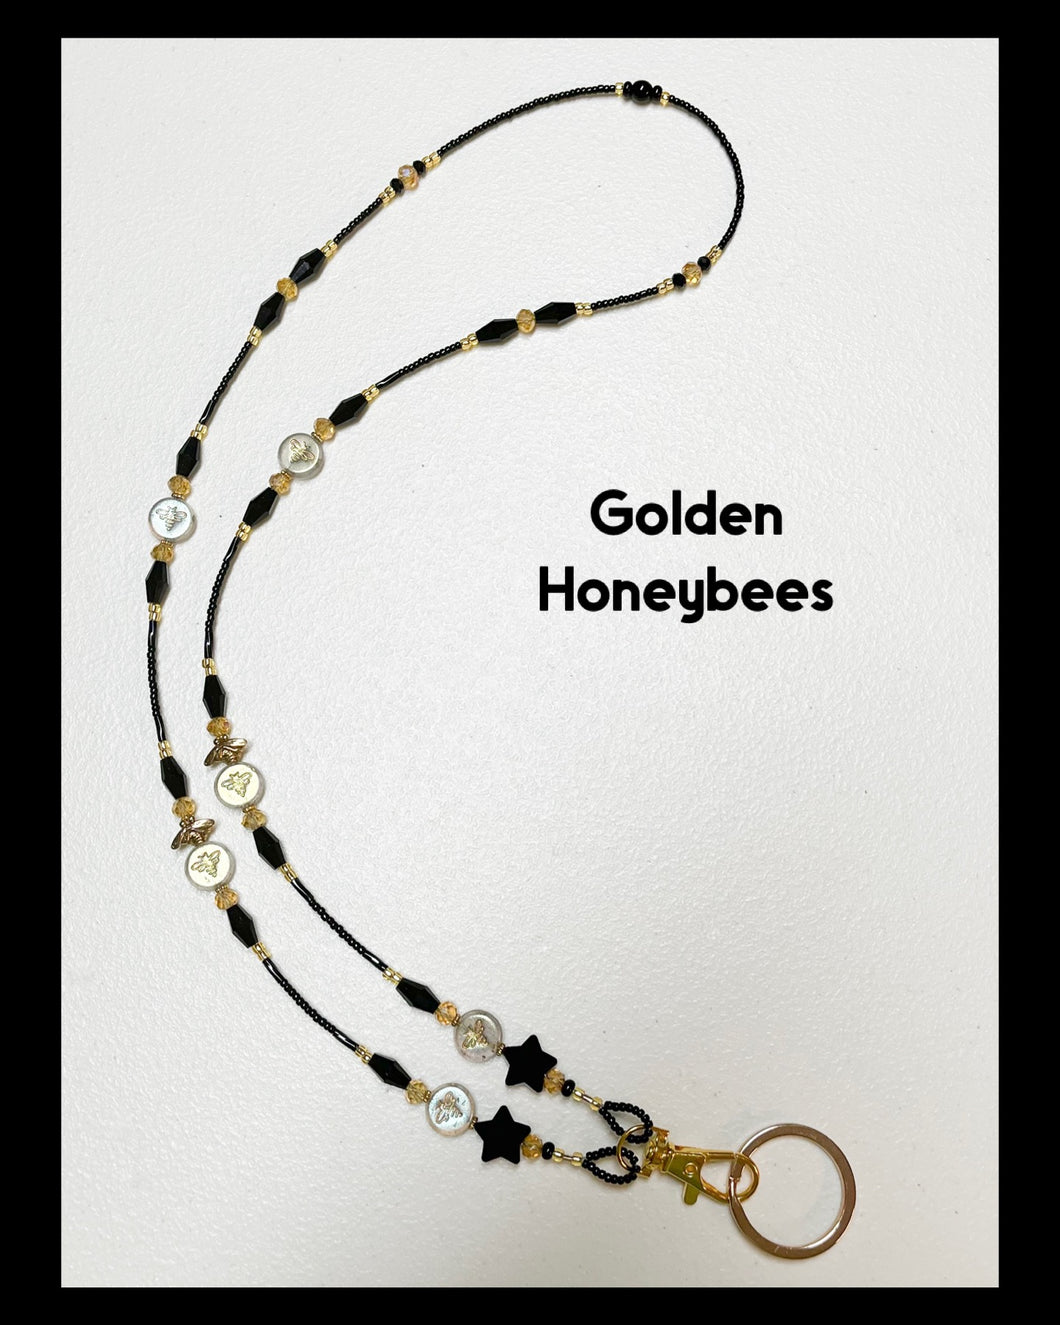 Golden Honeybees Lanyard